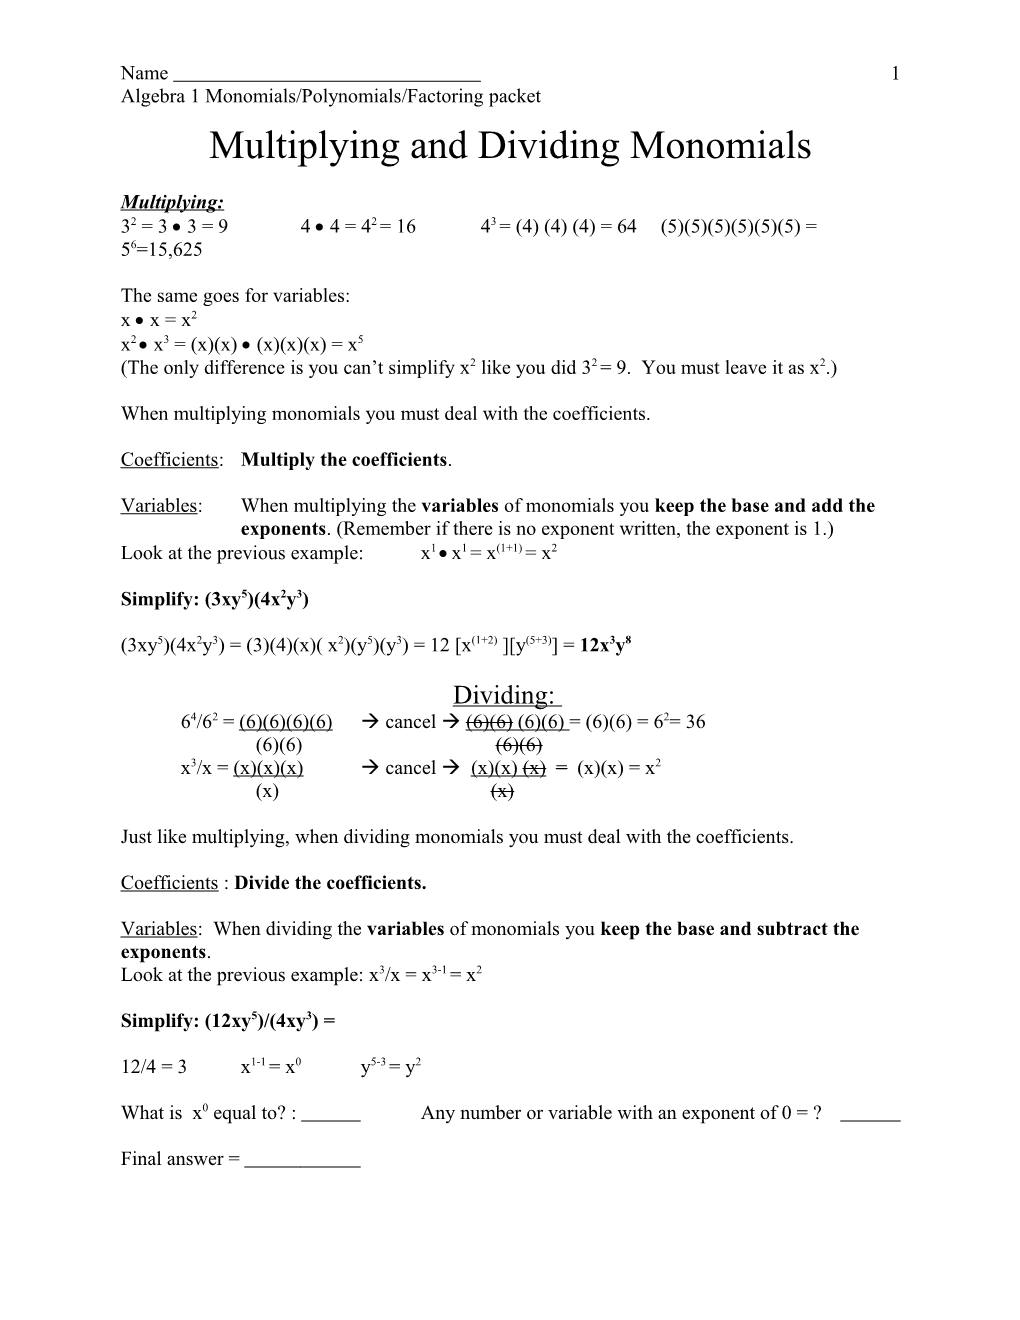 Algebra 1 Monomials/Polynomials/Factoring Packet